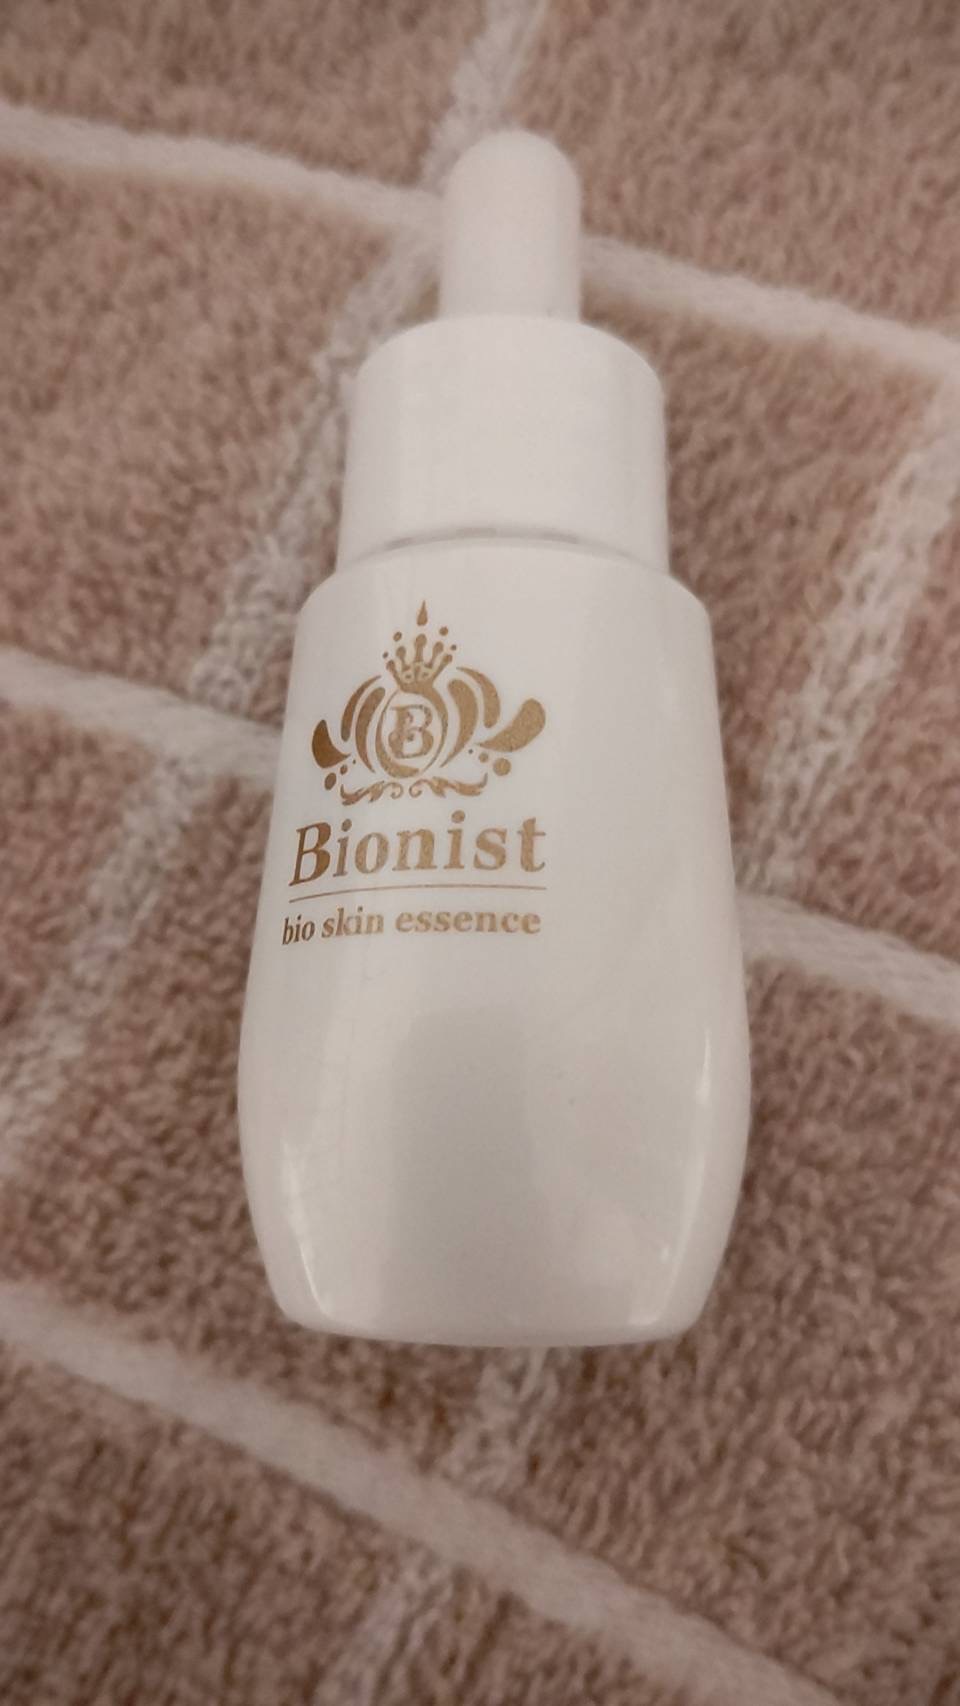 値段が激安スキンケア/基礎化粧品Bionist (ビオニスト) / Bionist bio skin essenceの公式商品情報